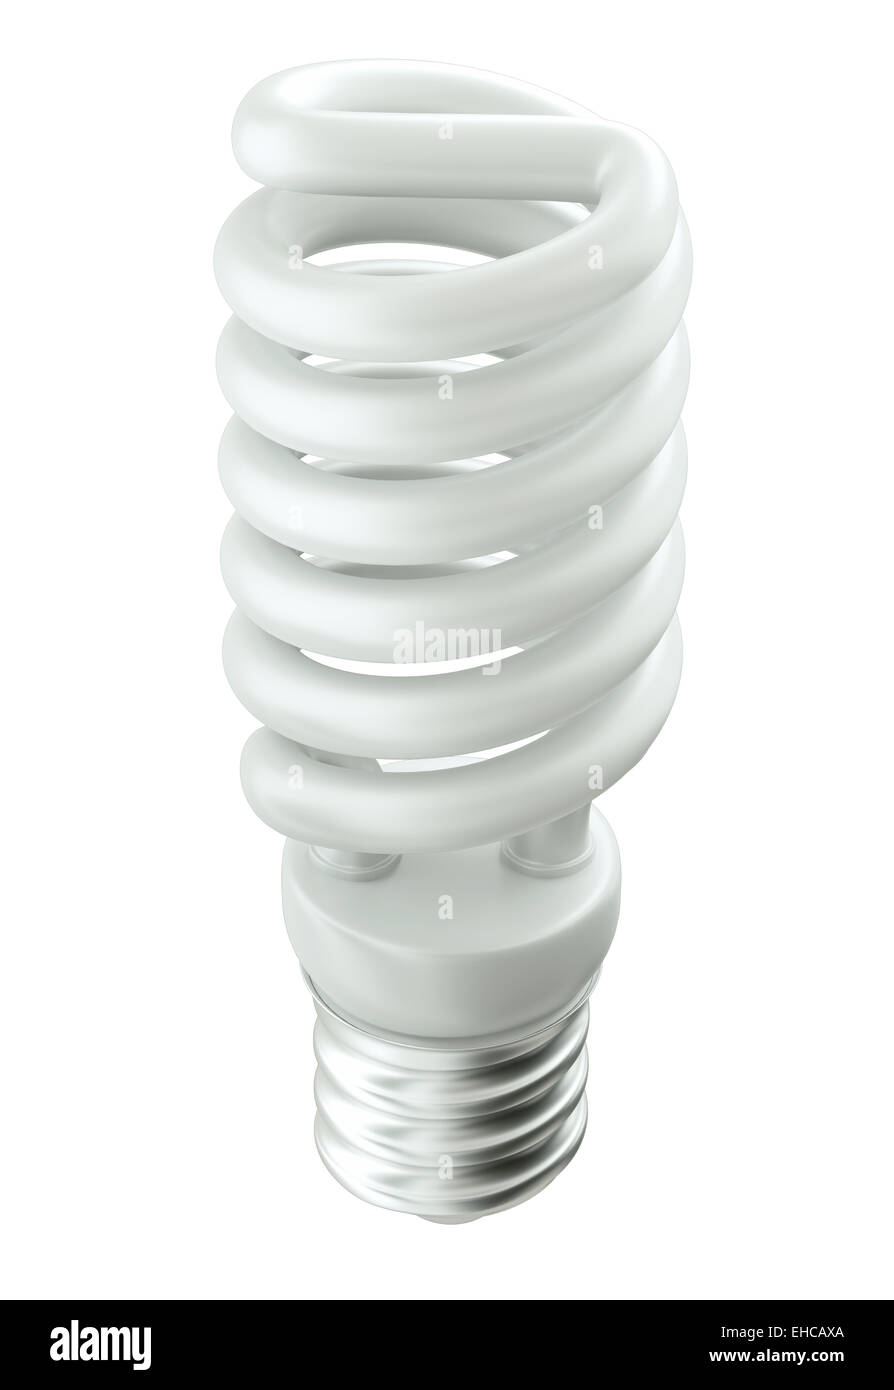 Efficacité énergétique : Light bulb isolated over white Banque D'Images